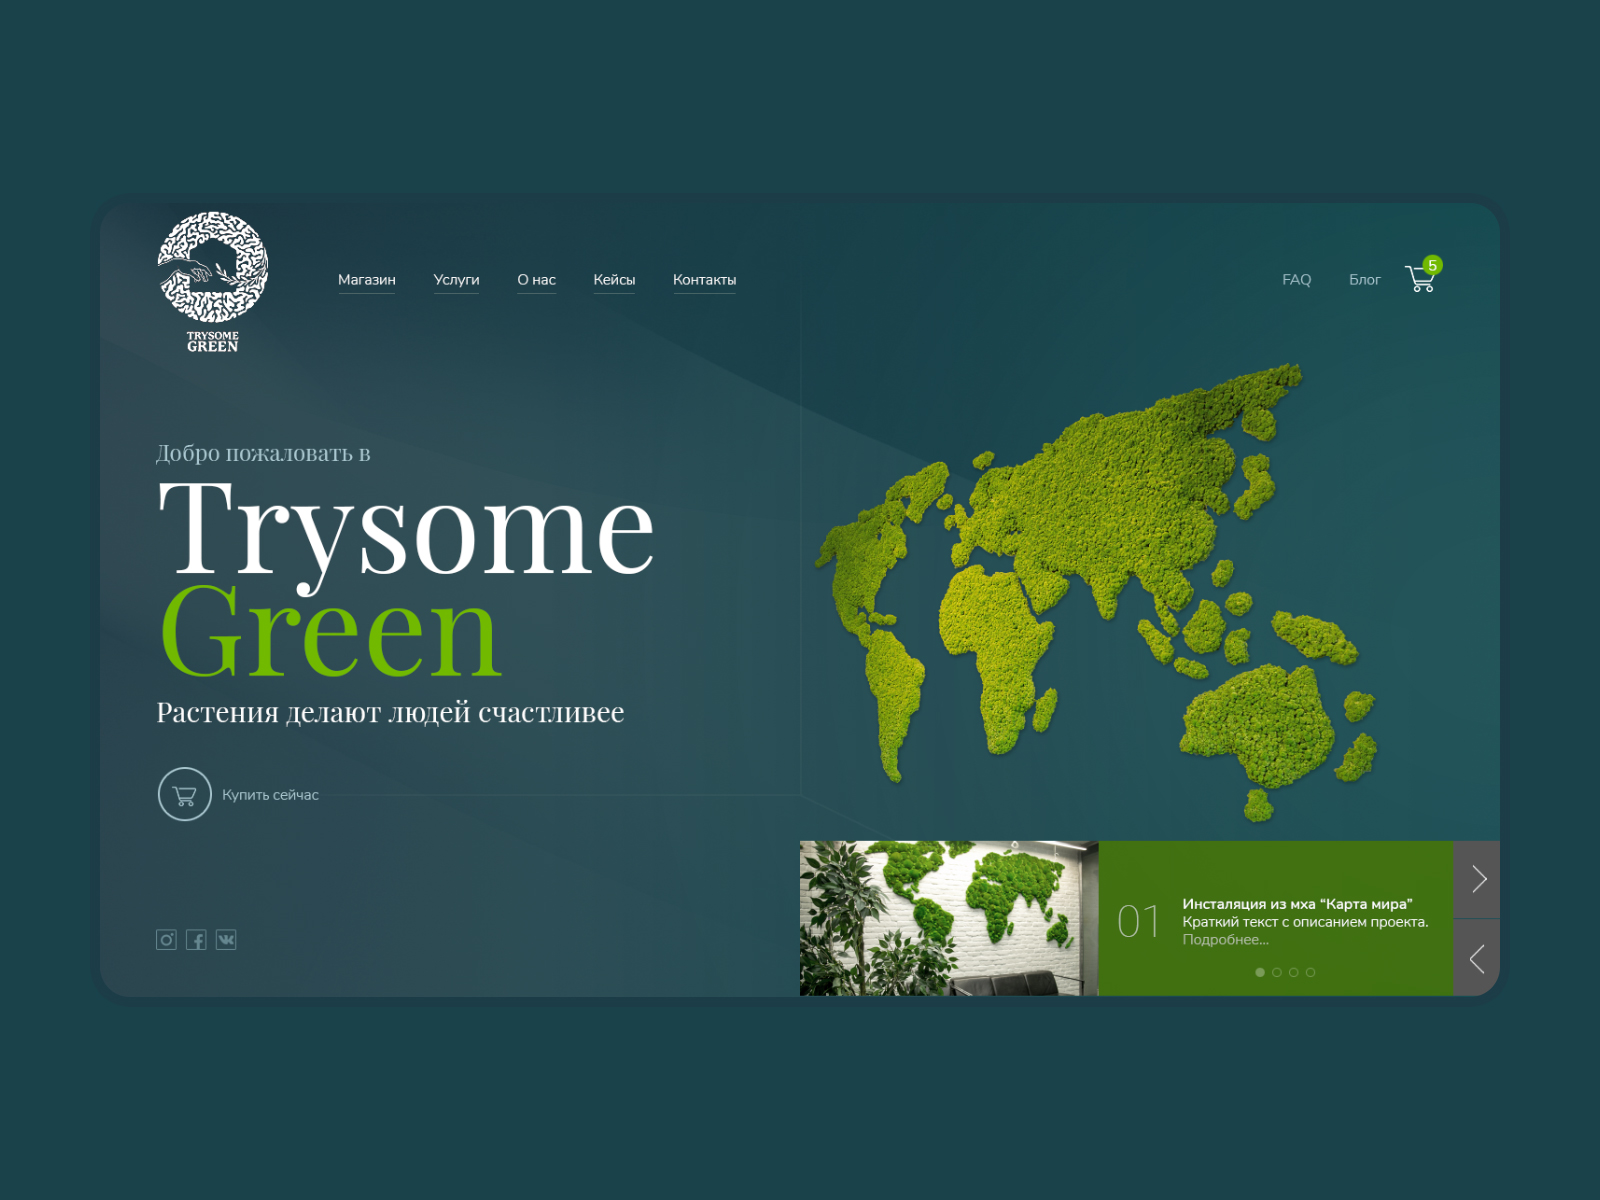 Дизайн сайта для компании, занимающейся предметами интерьера из мха и живых растений